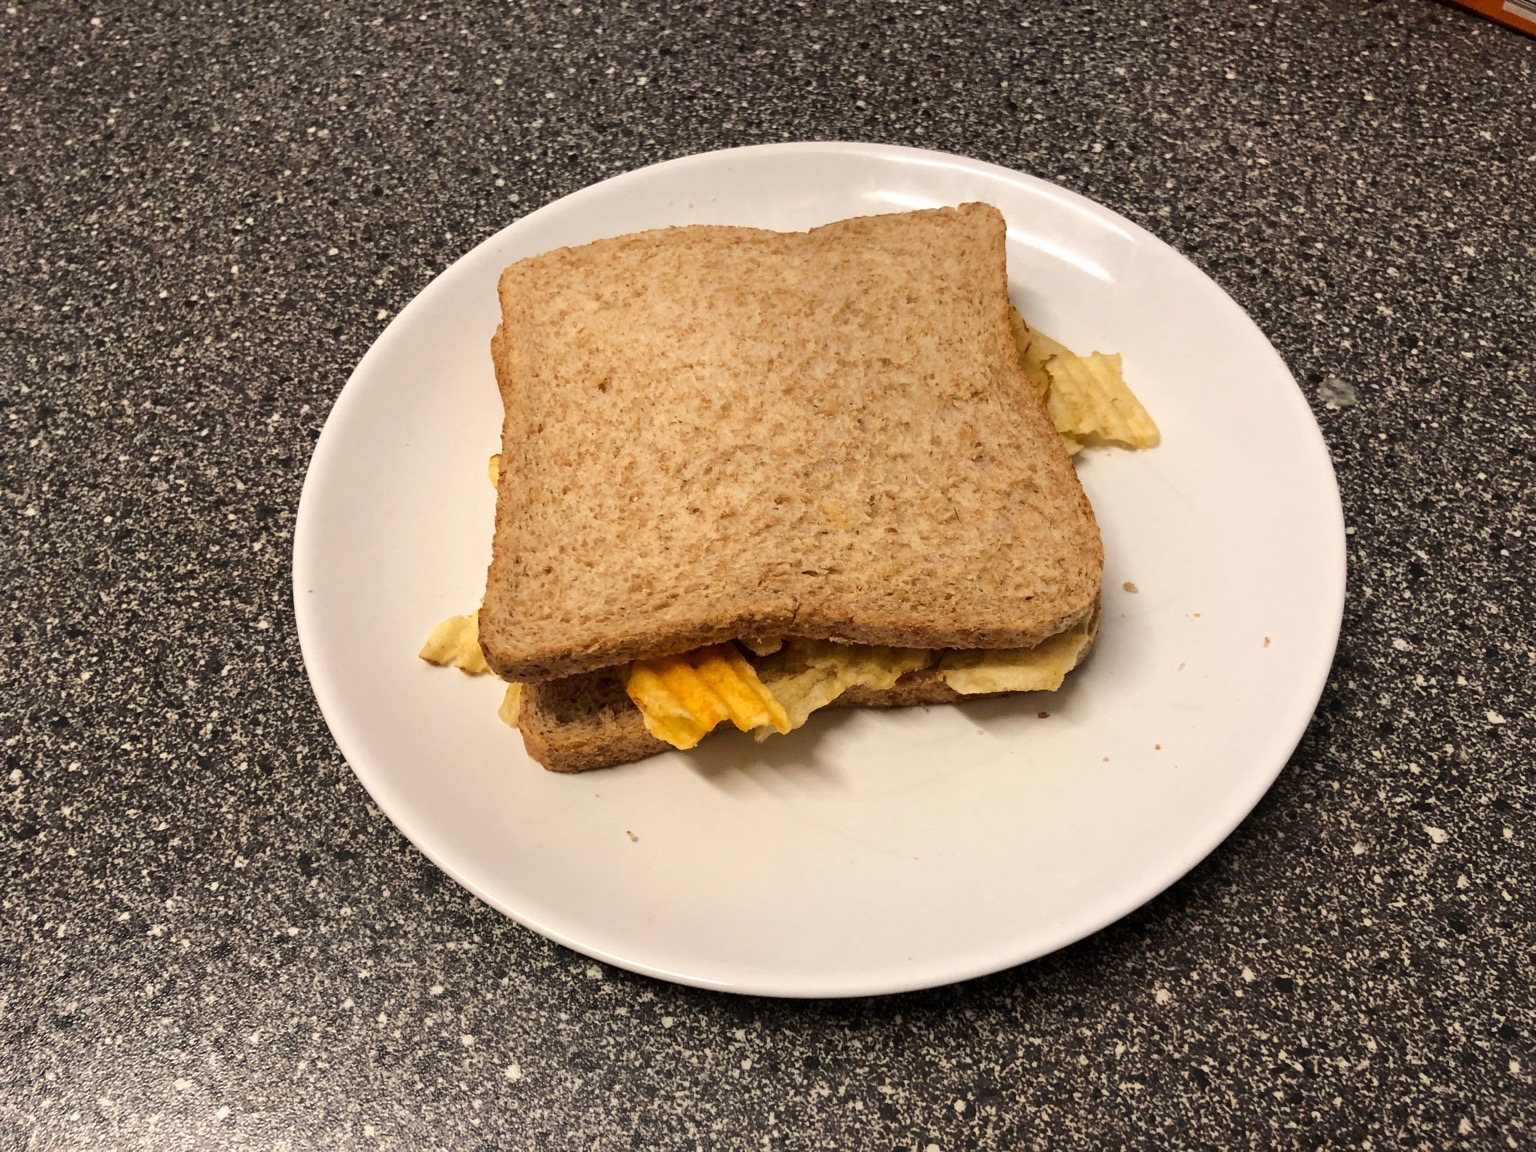 Crinkle-cut crisps in a brown bread sandwich